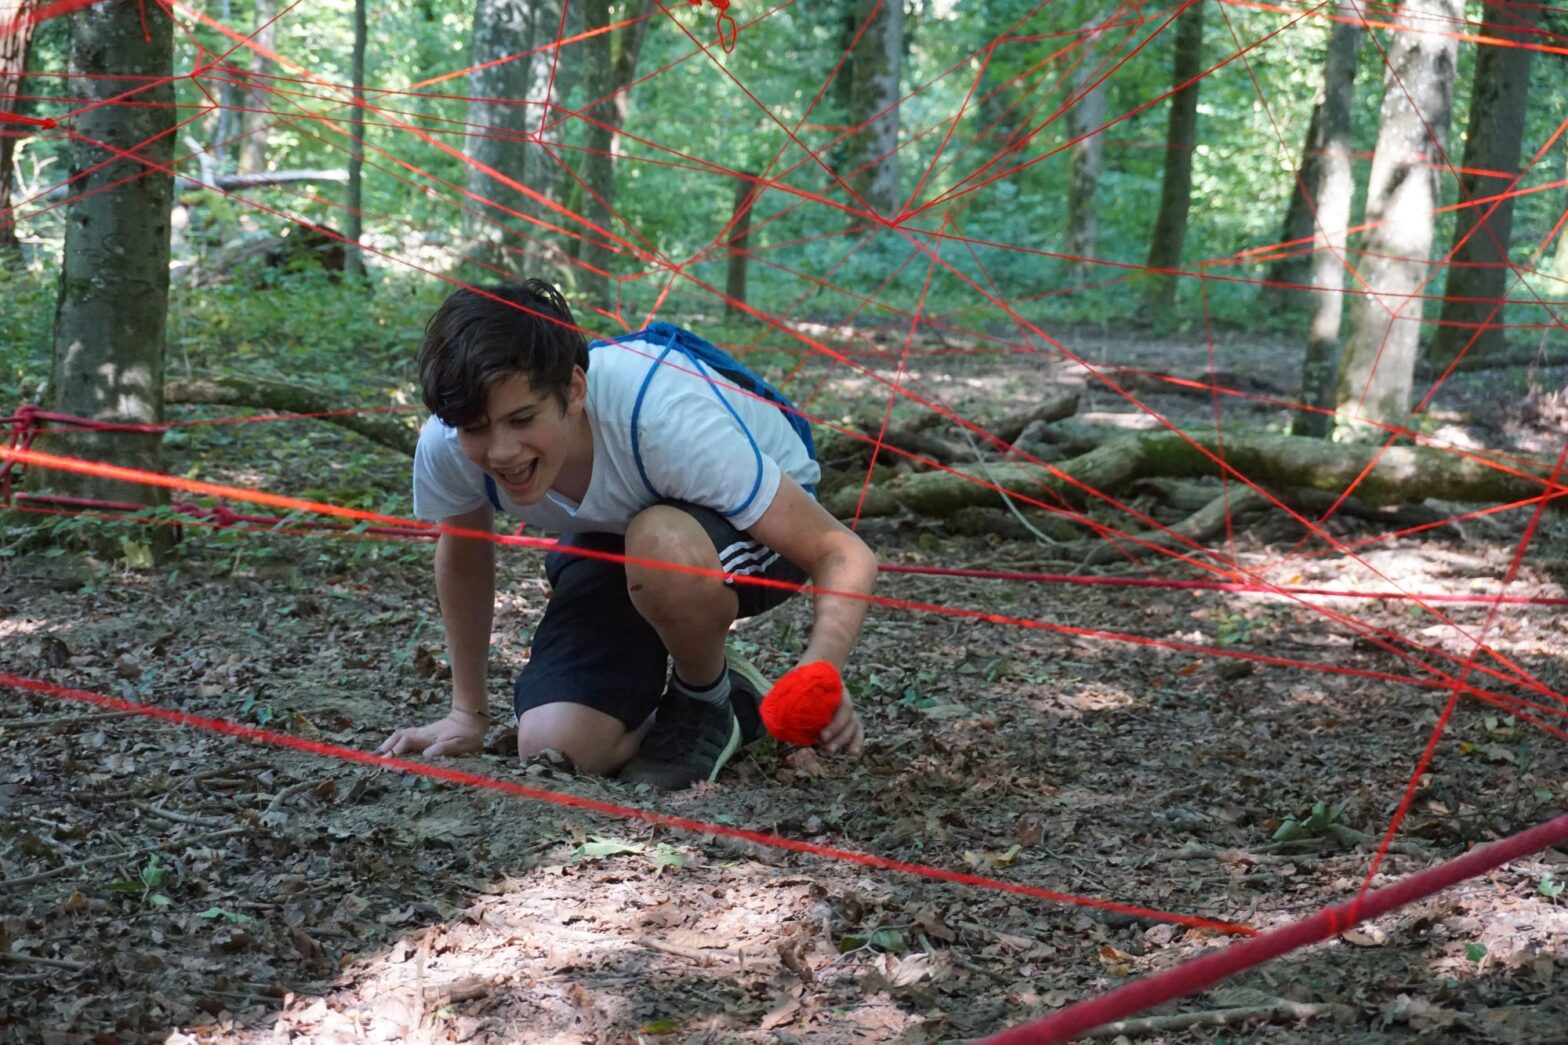 Jugendlicher kniet im Wald am Boden und spinnt mit rotem Faden ein Netzt.